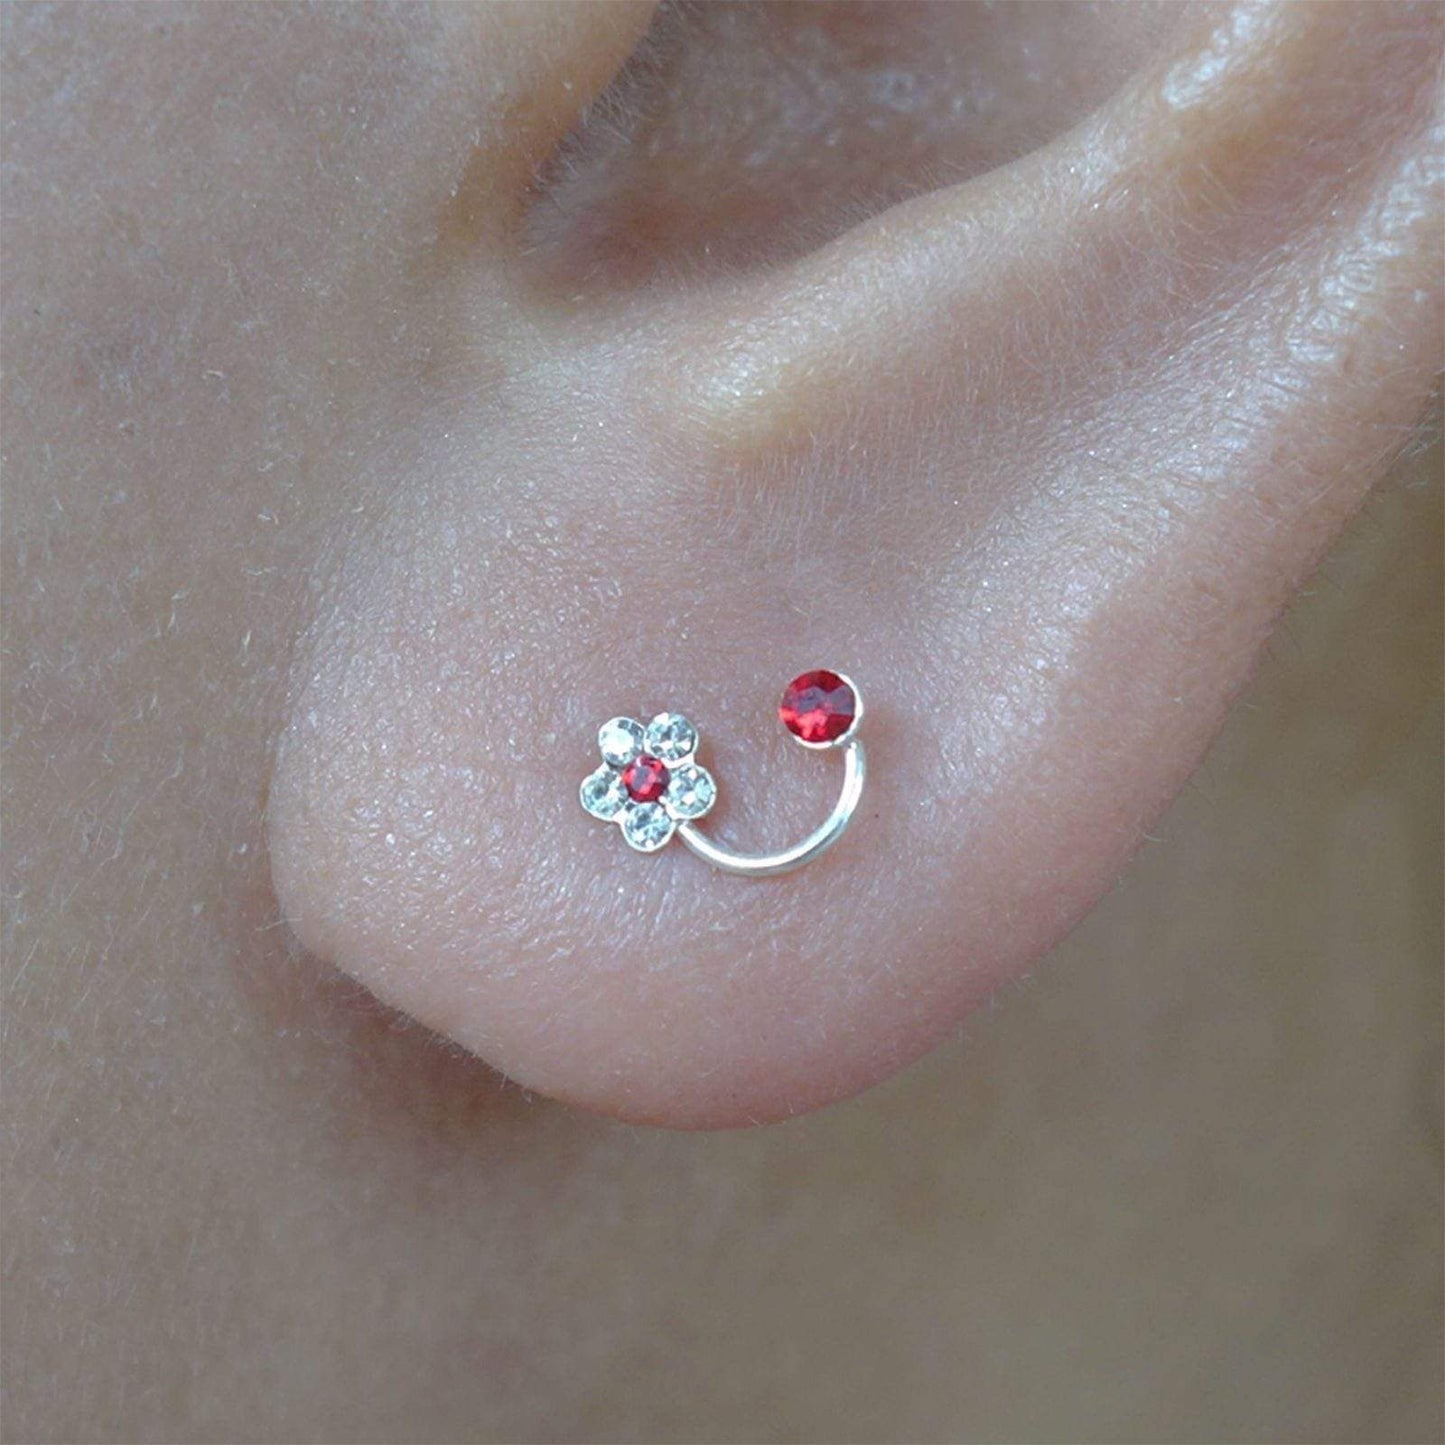 Pair of 925 Sterling Silver Flower Stud Earrings Red Crystal Ear Studs Jewellery Pair of 925 Sterling Silver Flower Stud Earrings Red Crystal Ear Studs Jewellery